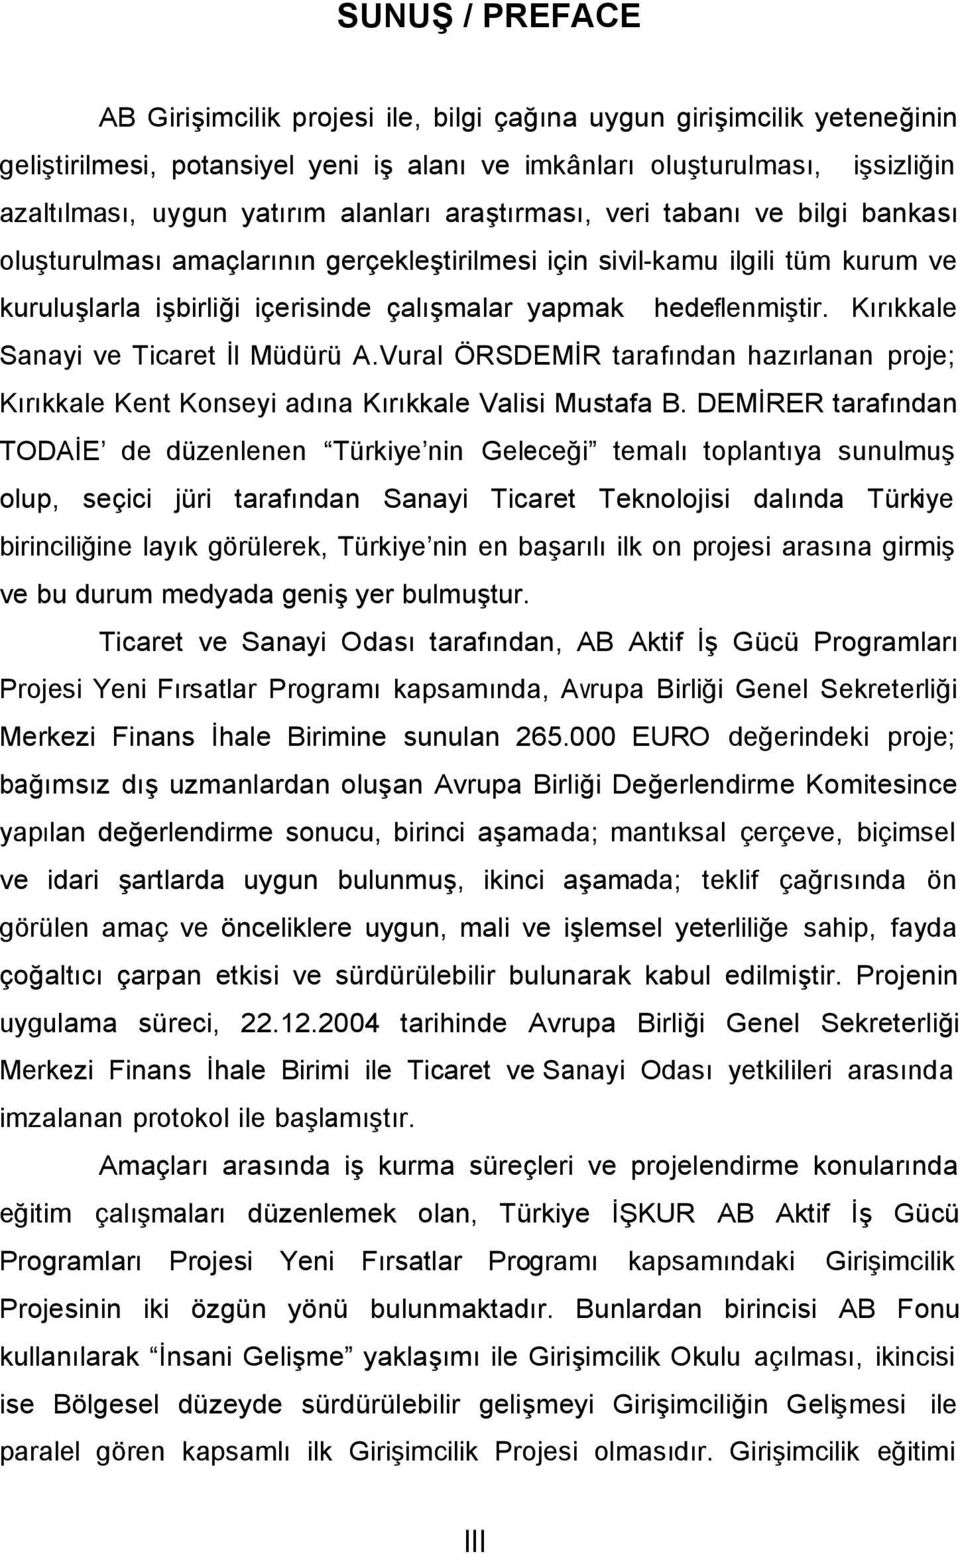 Kırıkkale Sanayi ve Ticaret İl Müdürü A.Vural ÖRSDEMİR tarafından hazırlanan proje; Kırıkkale Kent Konseyi adına Kırıkkale Valisi Mustafa B.